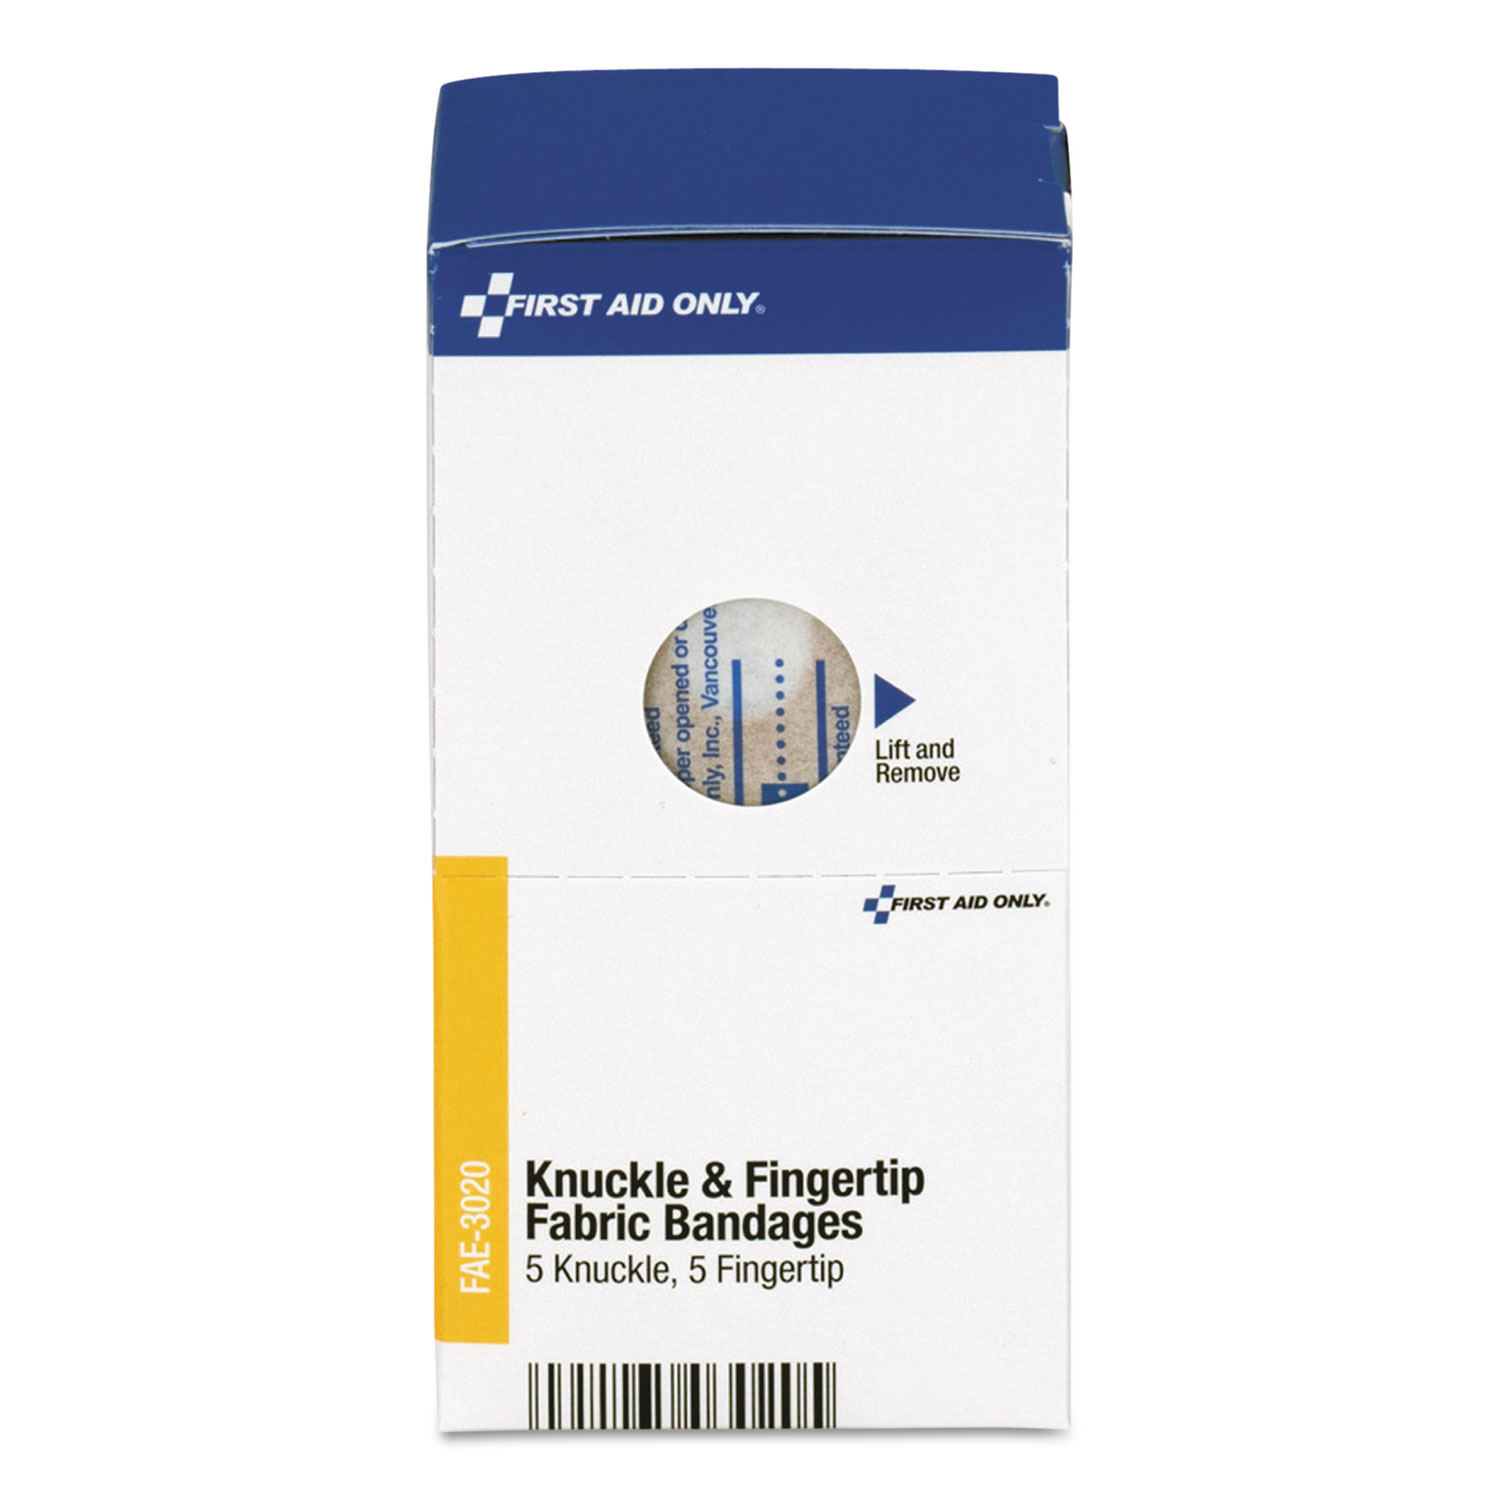 Knuckle & Fingertip Bandages, Sterilized, 5 Knuckle, 5 Fingertip, 10/Box